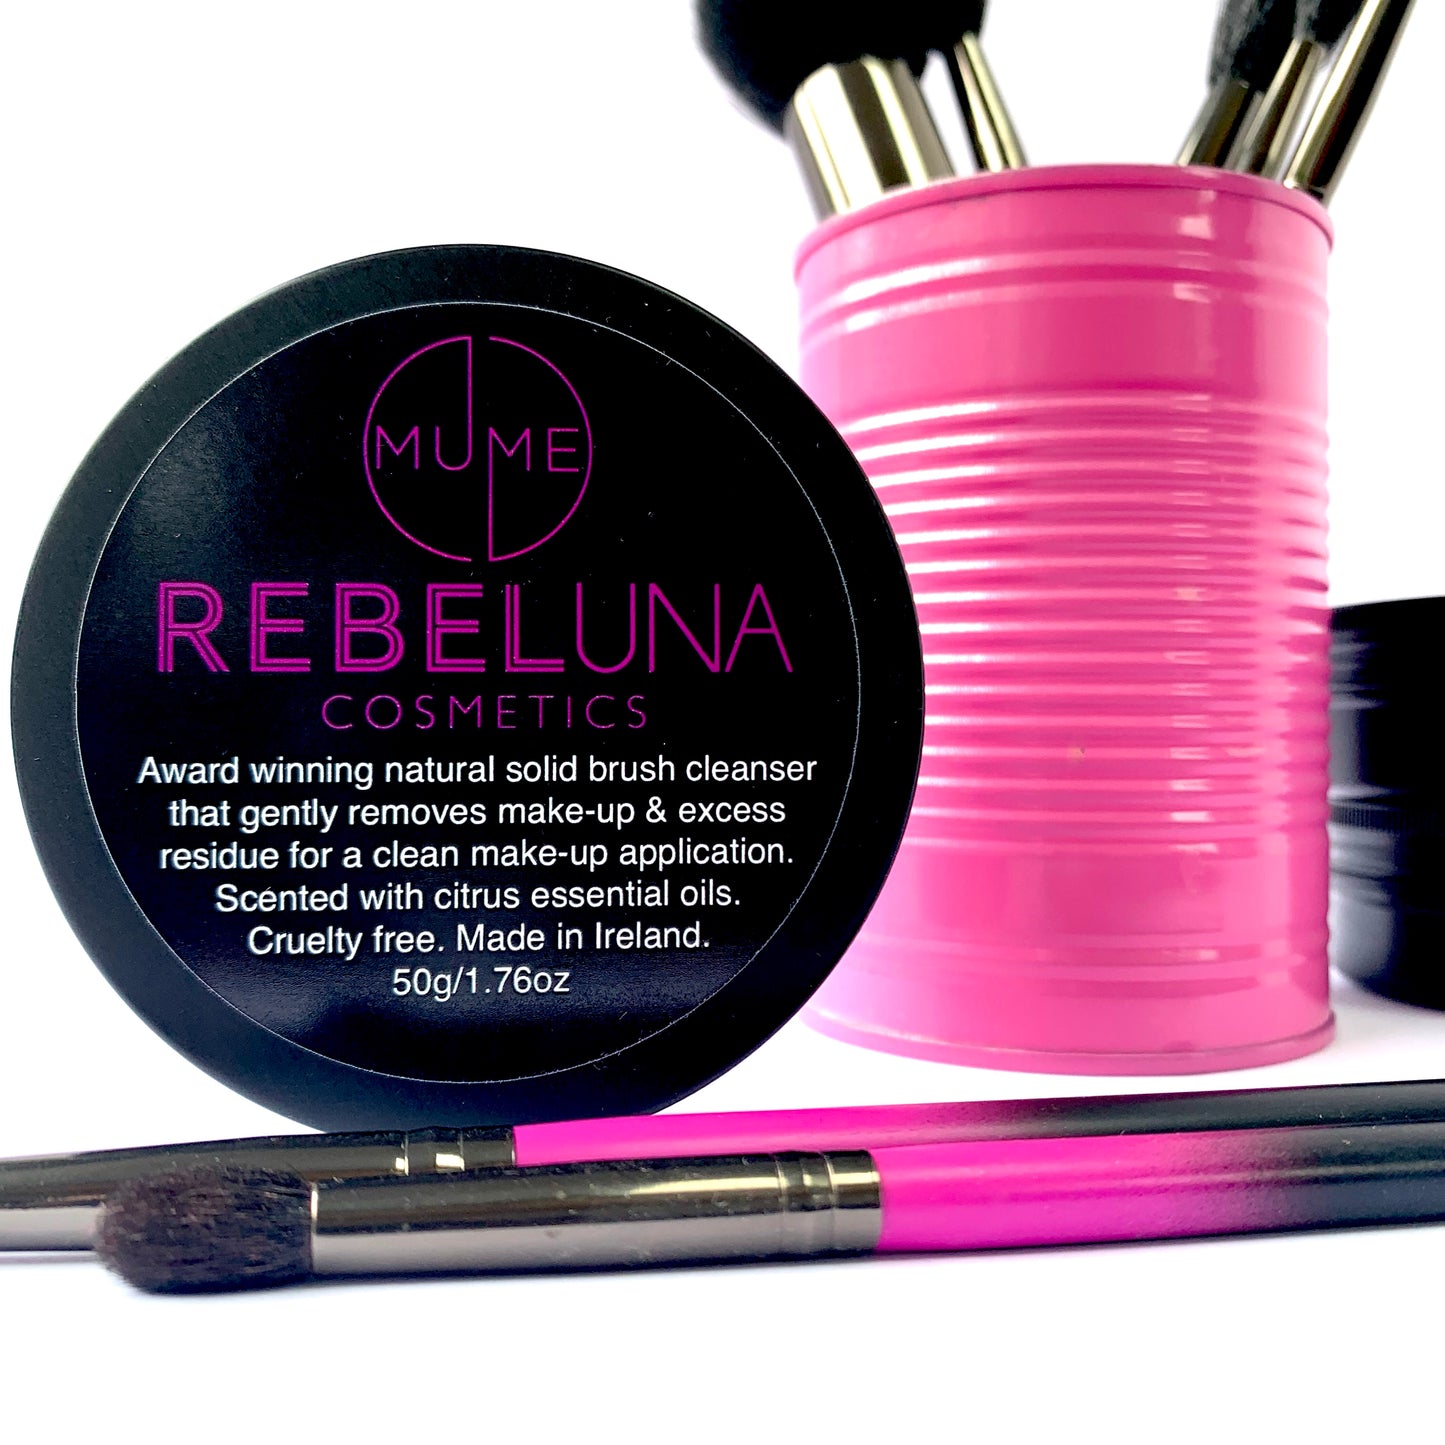 RebelUna & MuMe's Solid MakeUp Brush Cleanser